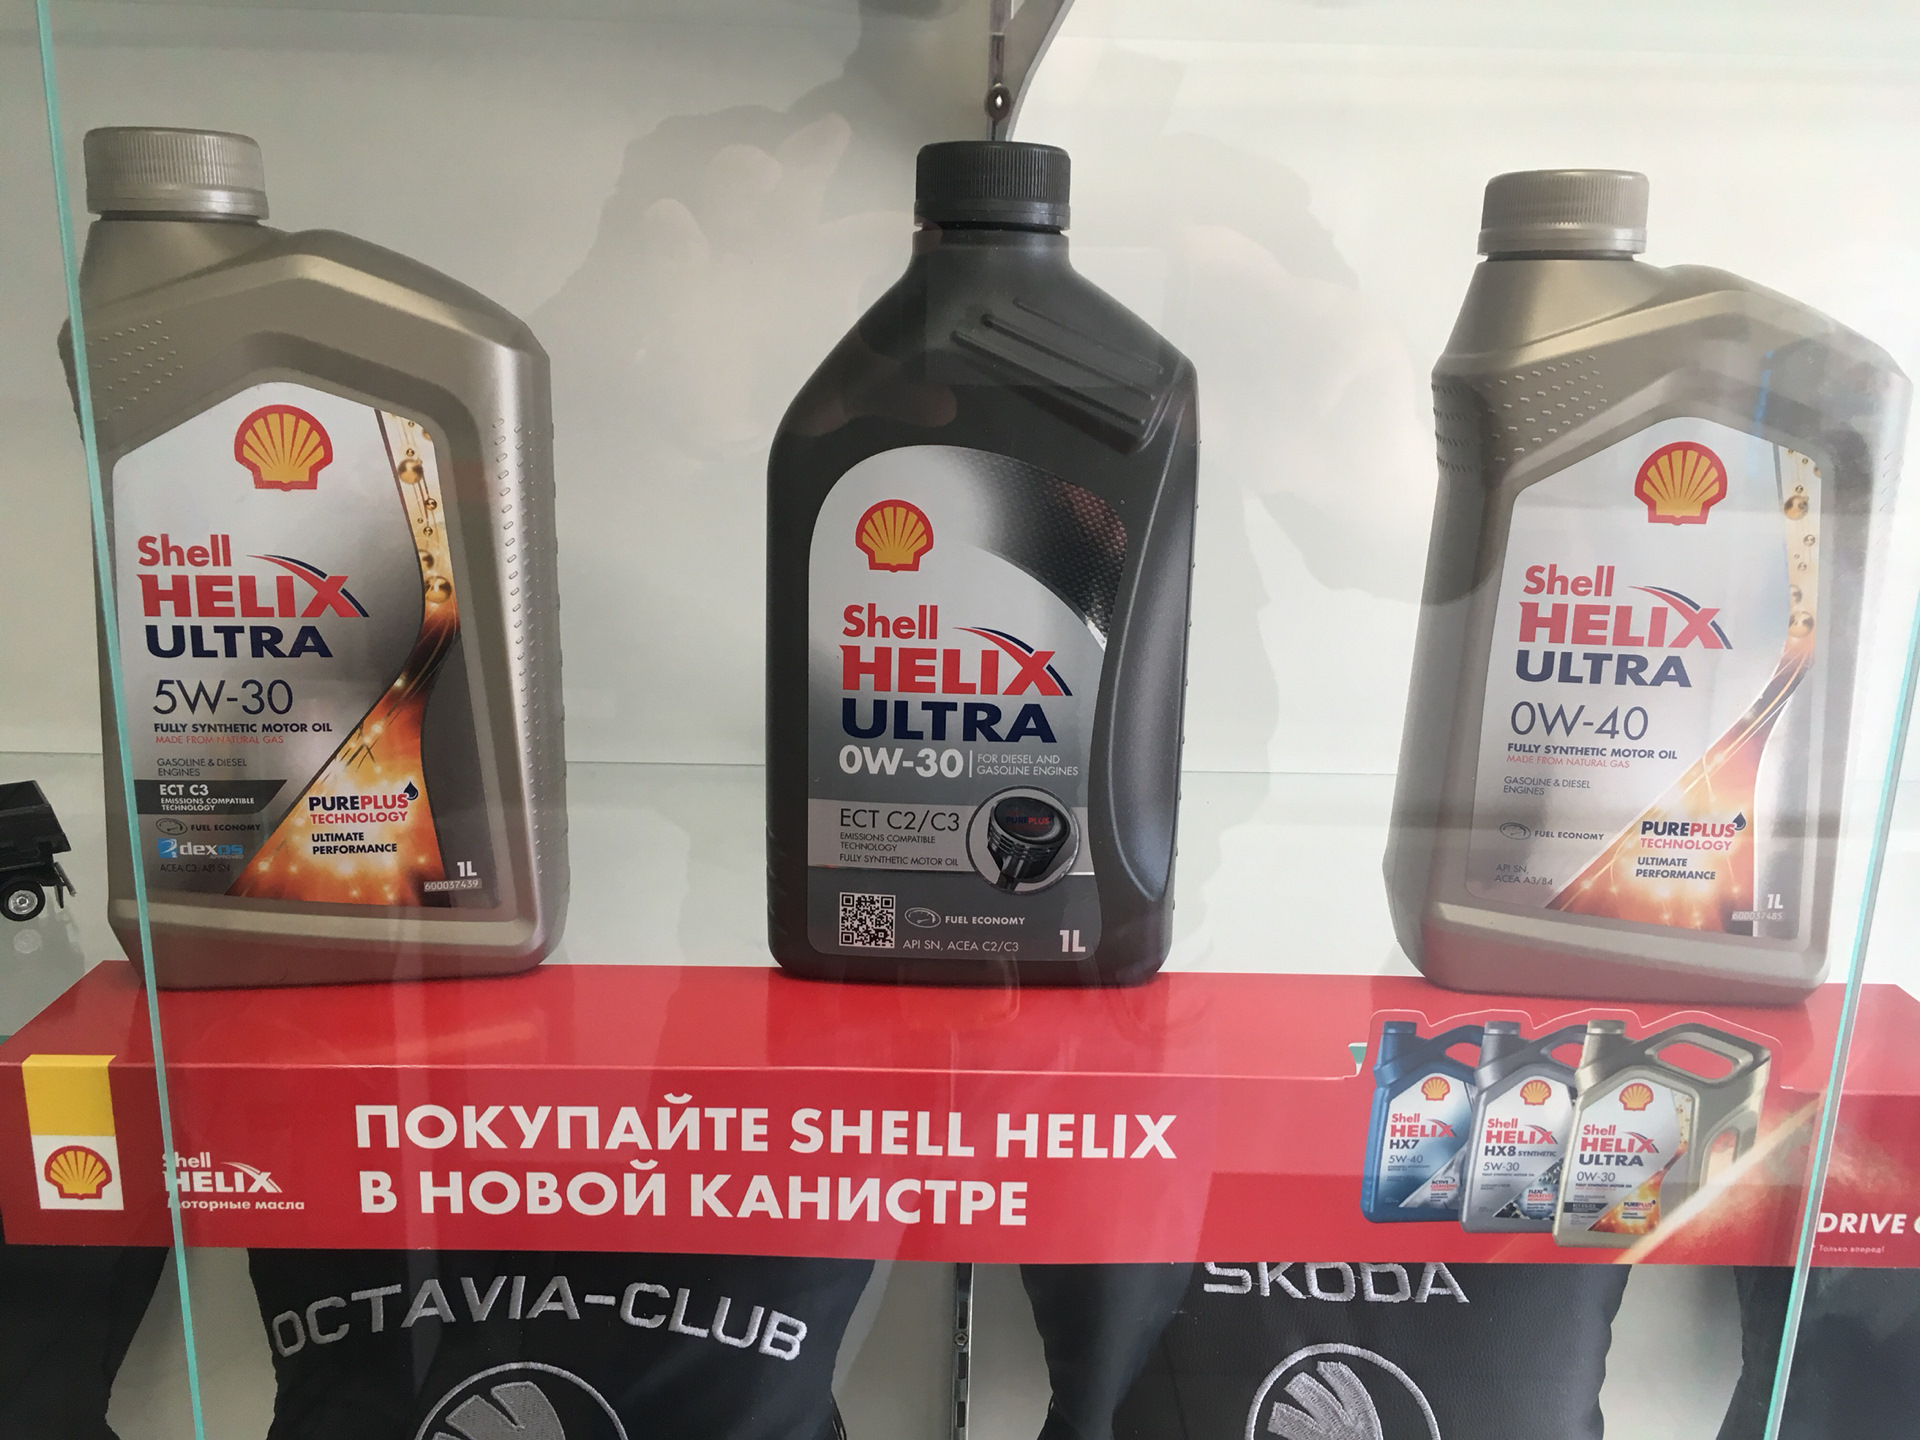 Shell av. Сертификат Shell Ultra. Оригинальное масло Шелл 2024. Сертификат Шелл Хеликс ультра. Масло Шелл сертификат качества.